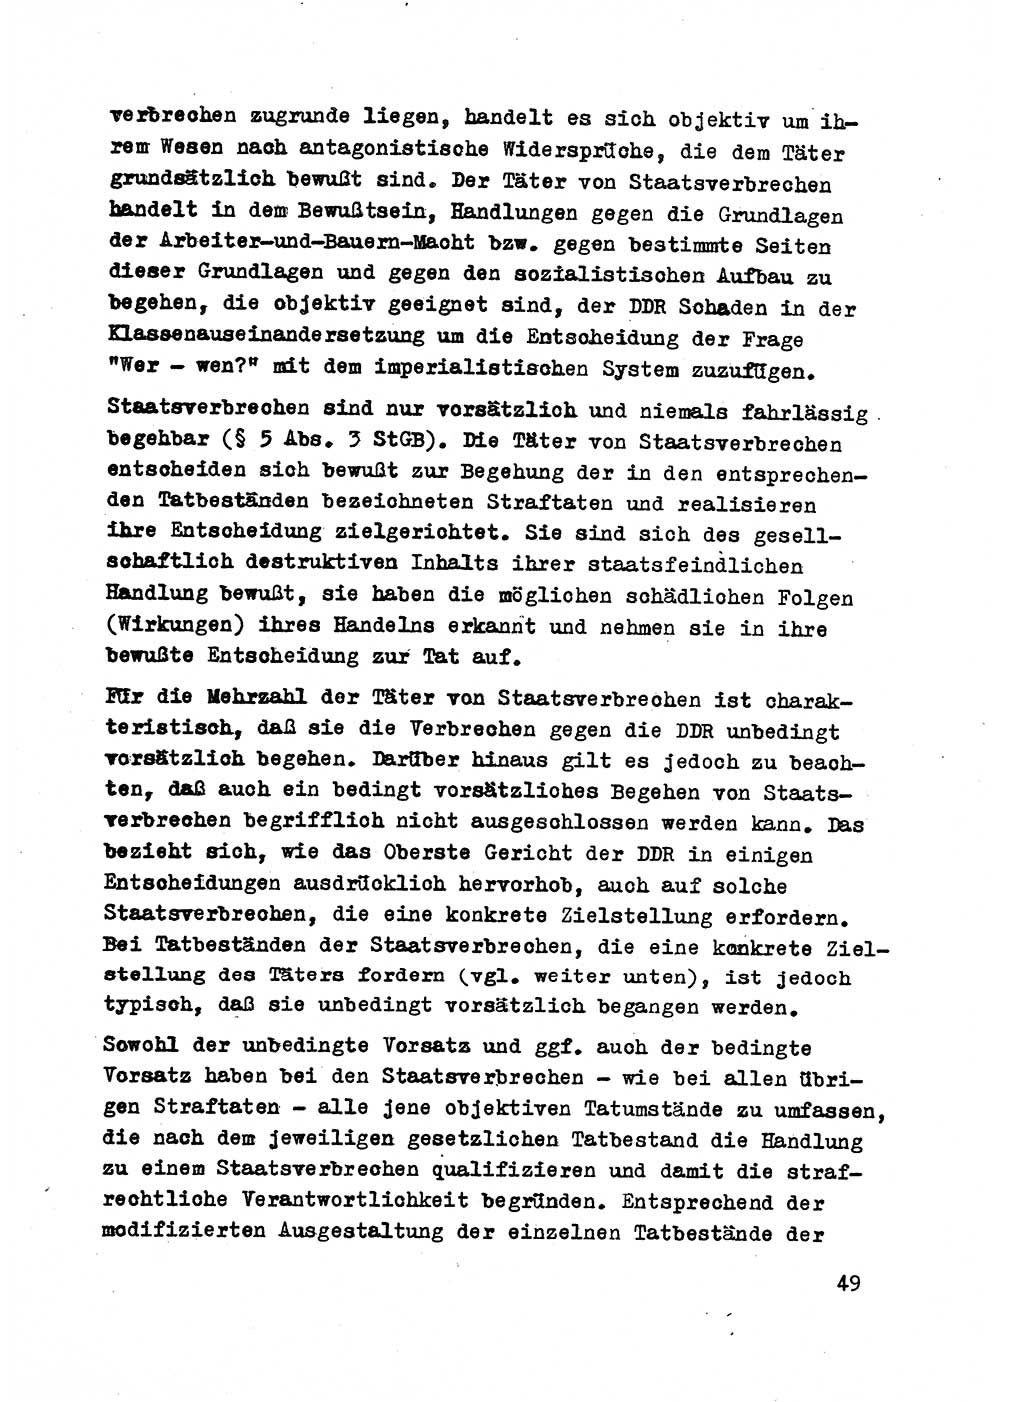 Strafrecht der DDR (Deutsche Demokratische Republik), Besonderer Teil, Lehrmaterial, Heft 2 1969, Seite 49 (Strafr. DDR BT Lehrmat. H. 2 1969, S. 49)